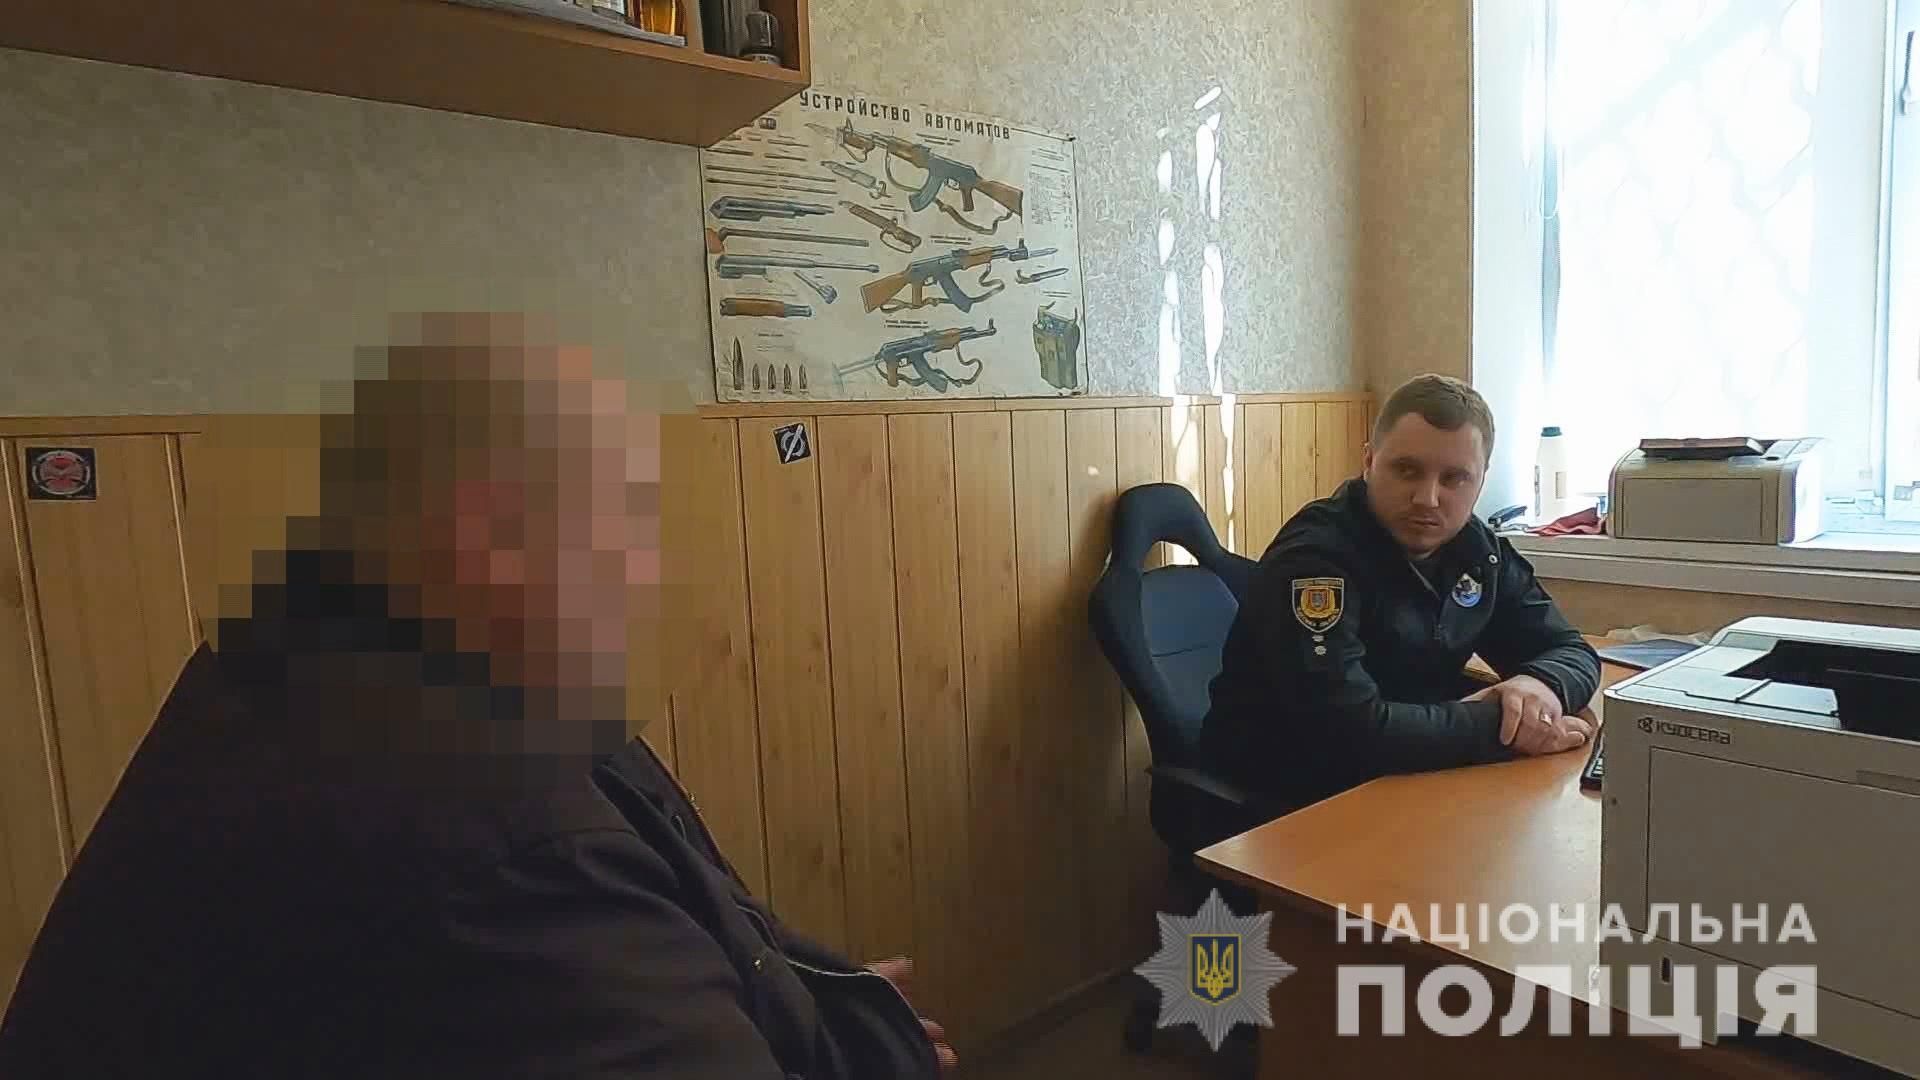 Одессит зарезал товарища за тарелку от холодца: видео допроса